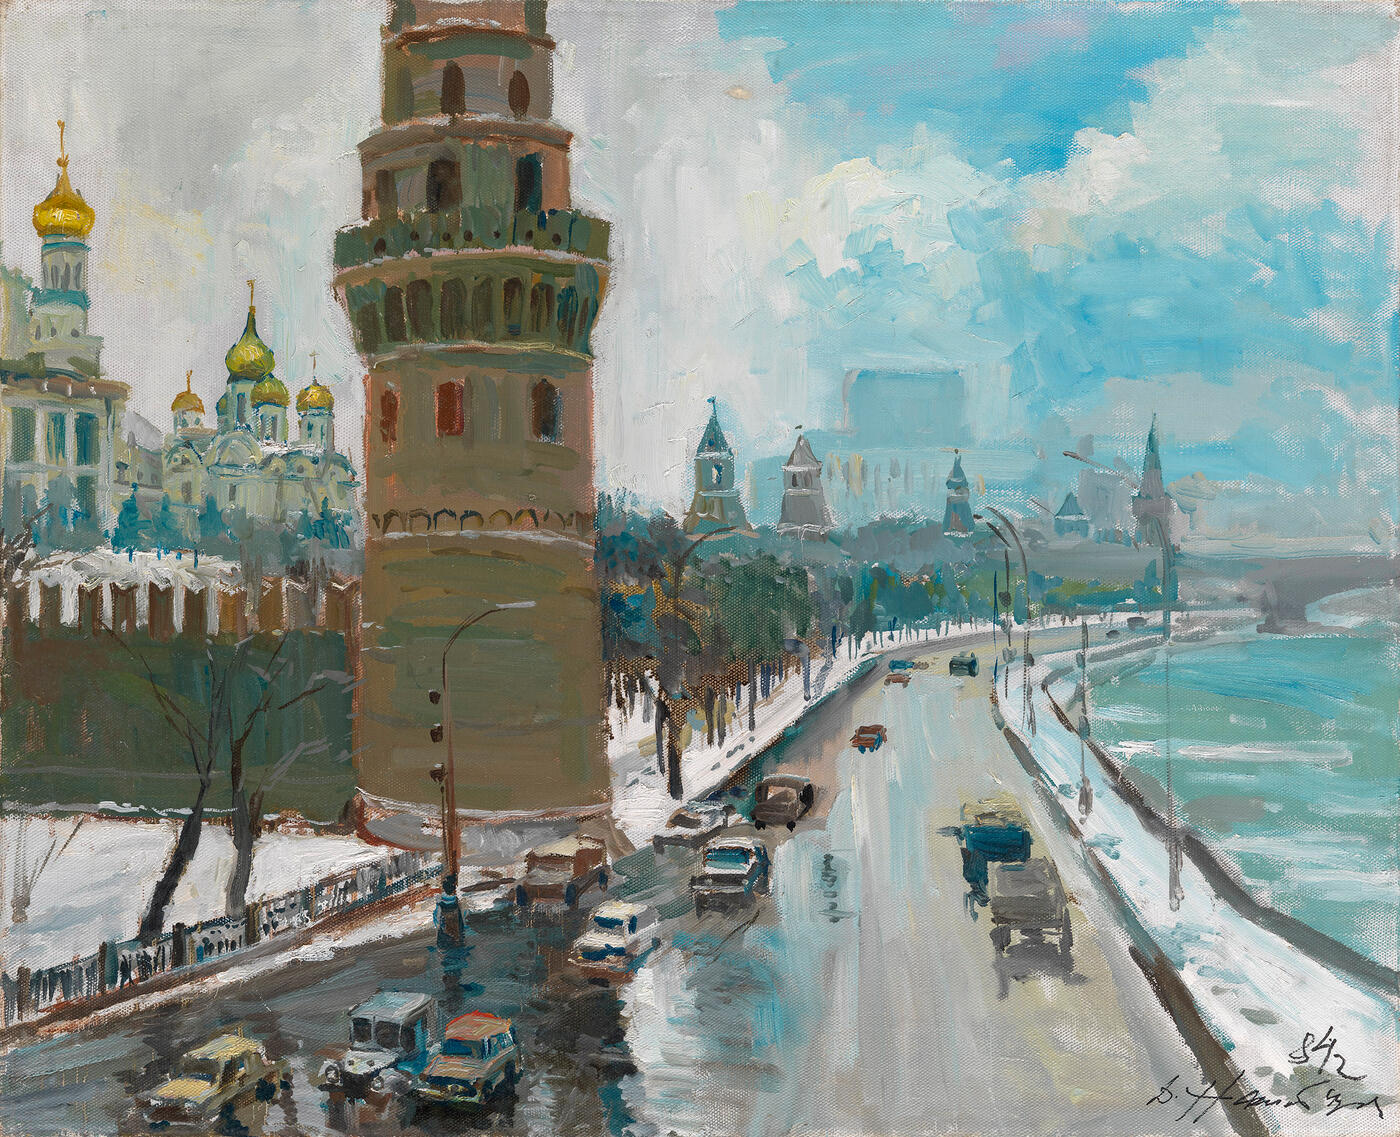 The Kremlin Embankment